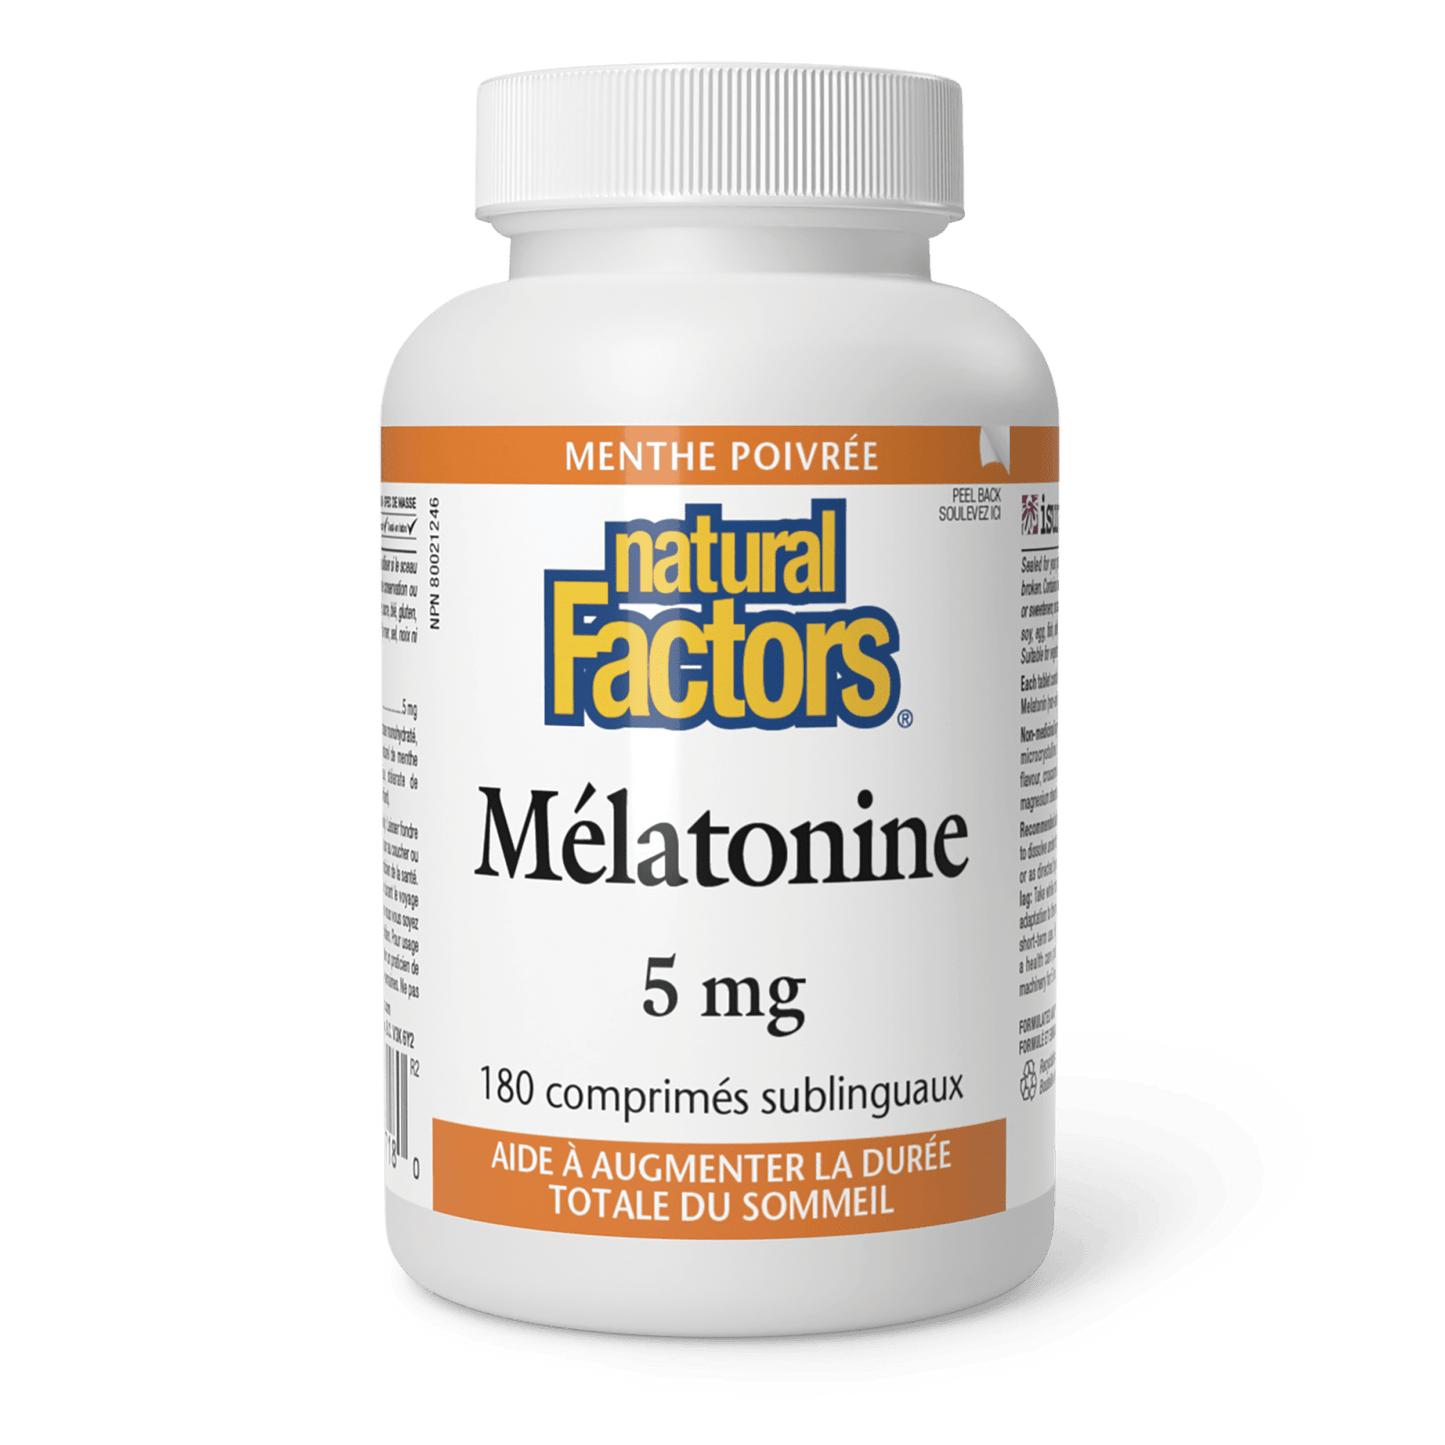 Mélatonine 5 mg, menthe poivrée, Natural Factors|v|image|2718